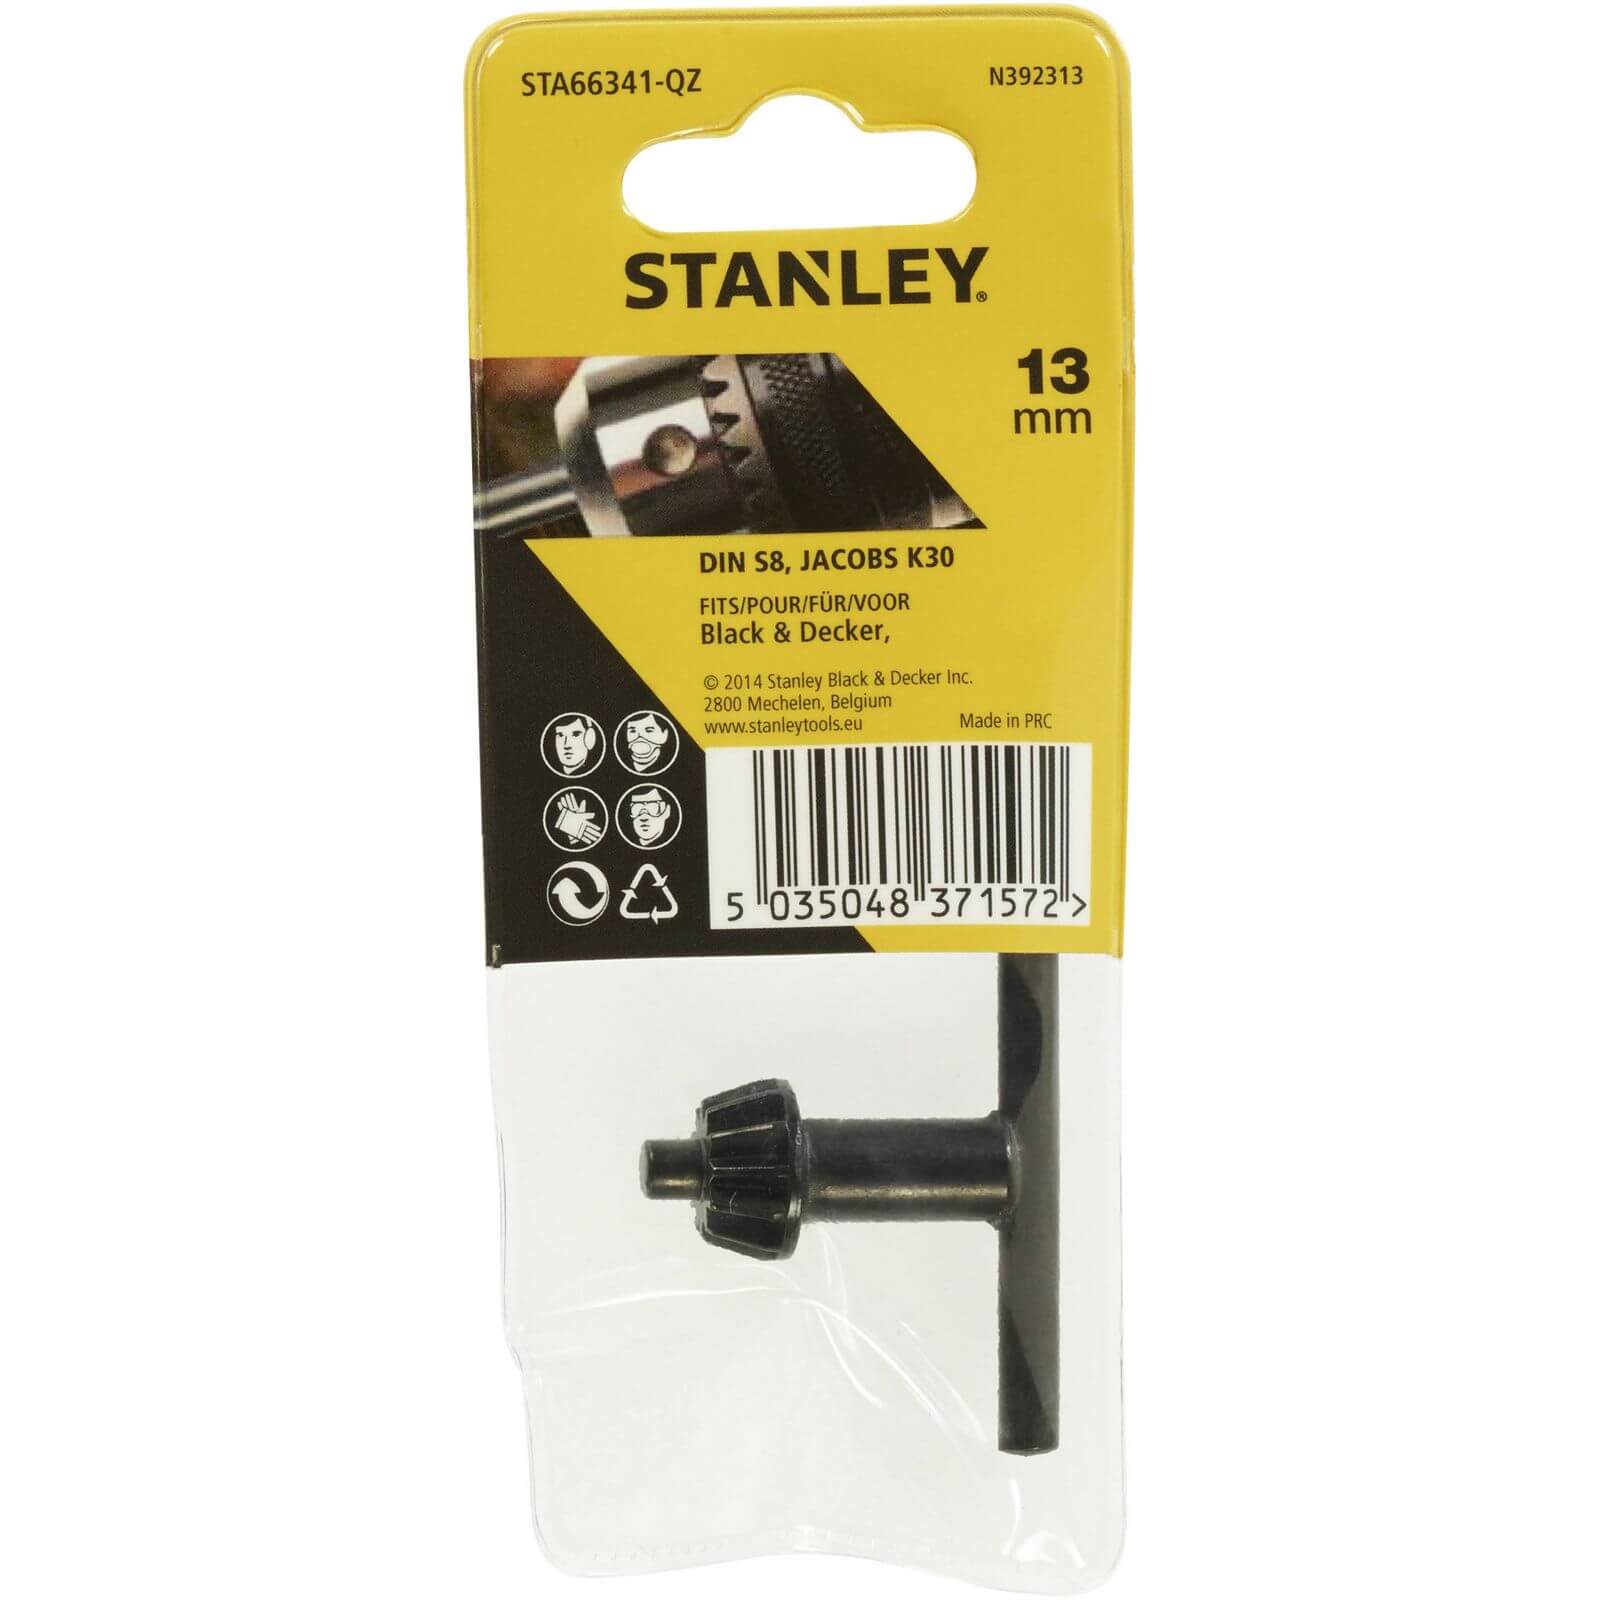 Stanley 13mm Drill Chuck Key - STA66341-QZ